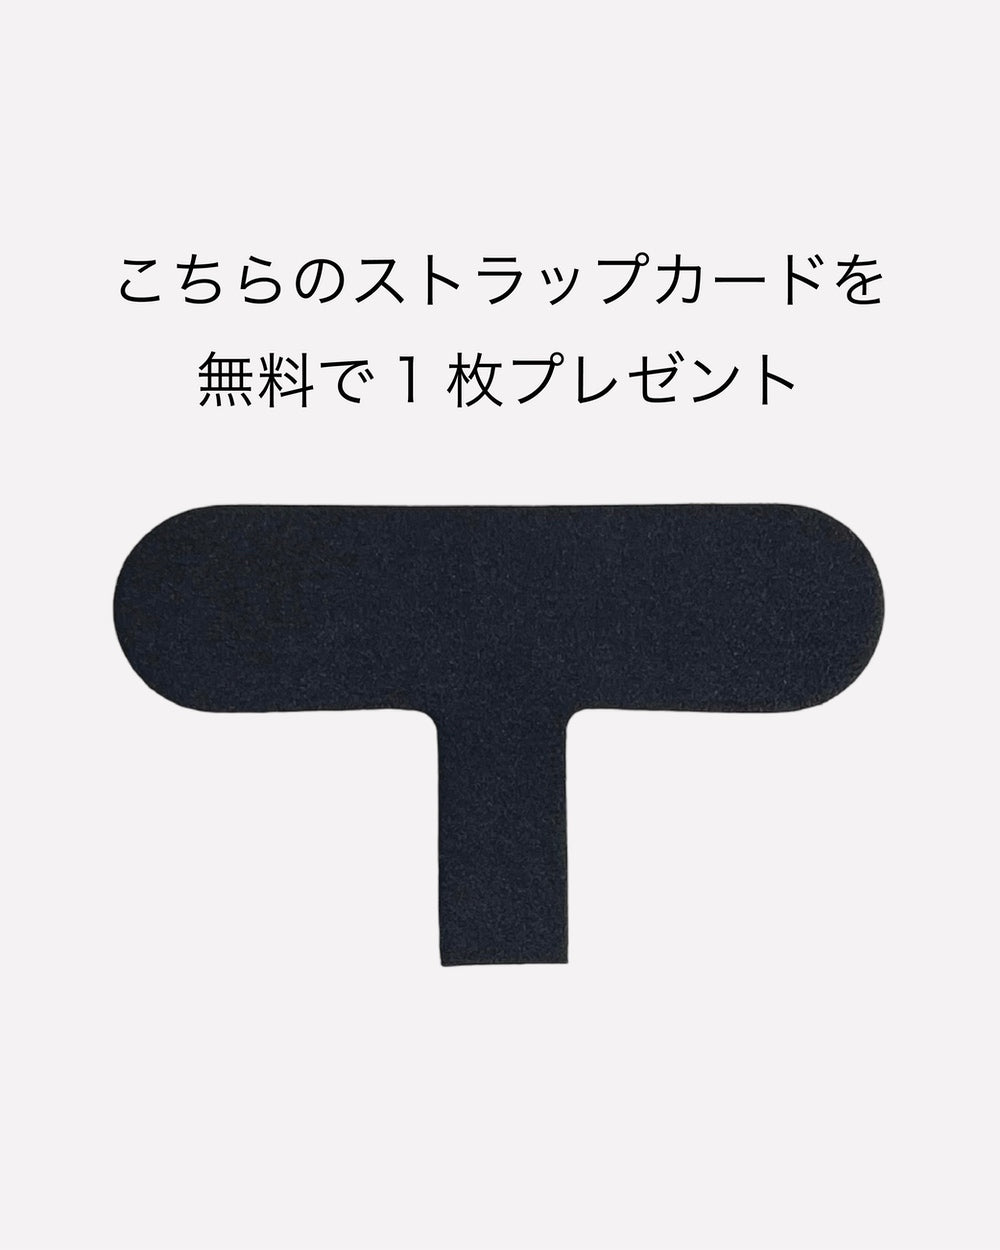 【セット商品】バンパーハードケース / R1001 / カーキ × ショルダーストラップ / グレー / R1784